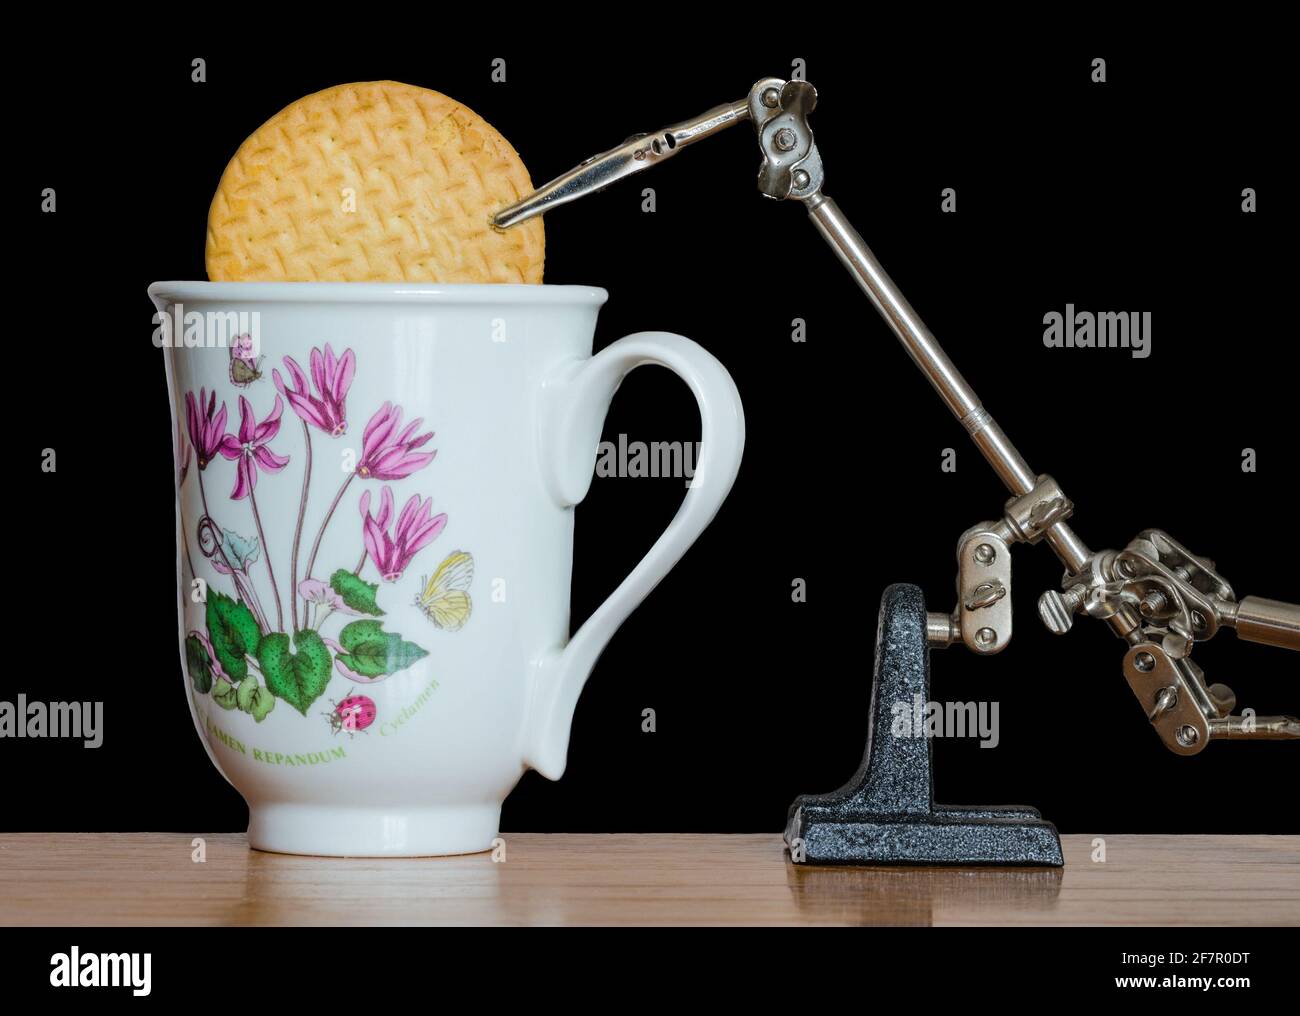 Braccio robot che inzuppano un biscotto nel caffè. Esempio di un'invenzione stupida, sciocca, pazza e inutile di una macchina inutile. Foto Stock